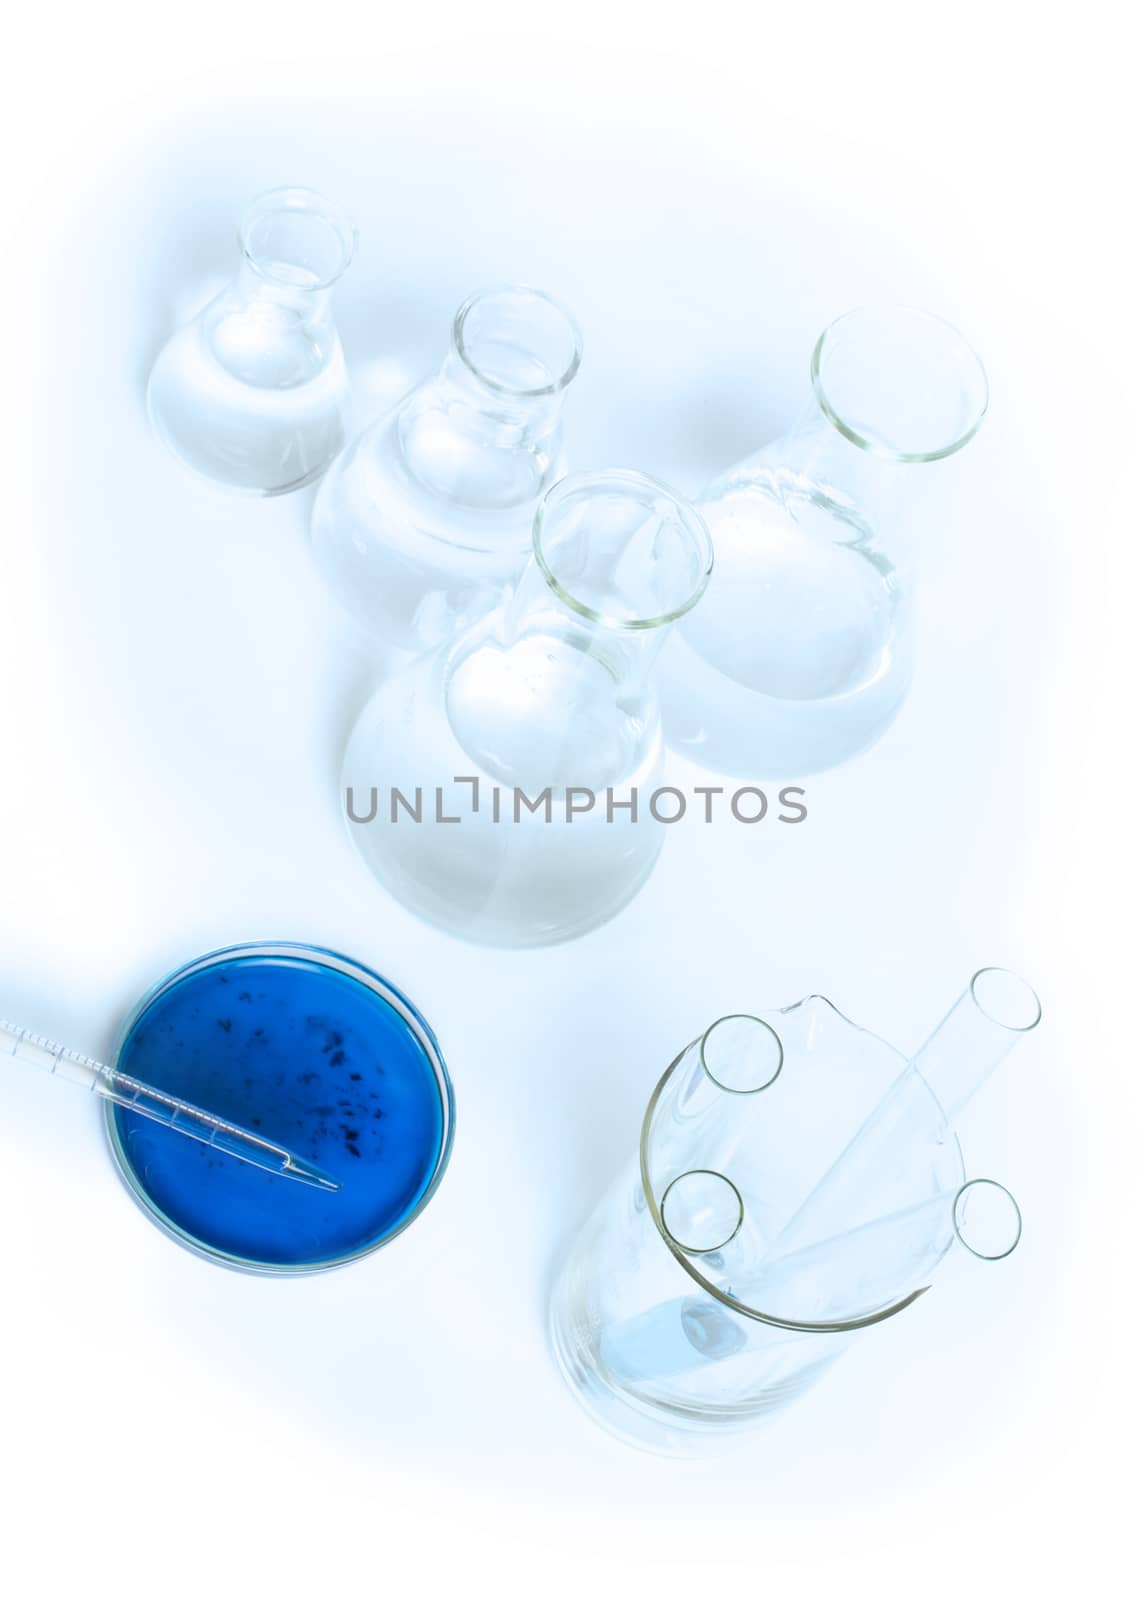 Laboratory glassware equipment. Laboratory beakers and blue liquid.